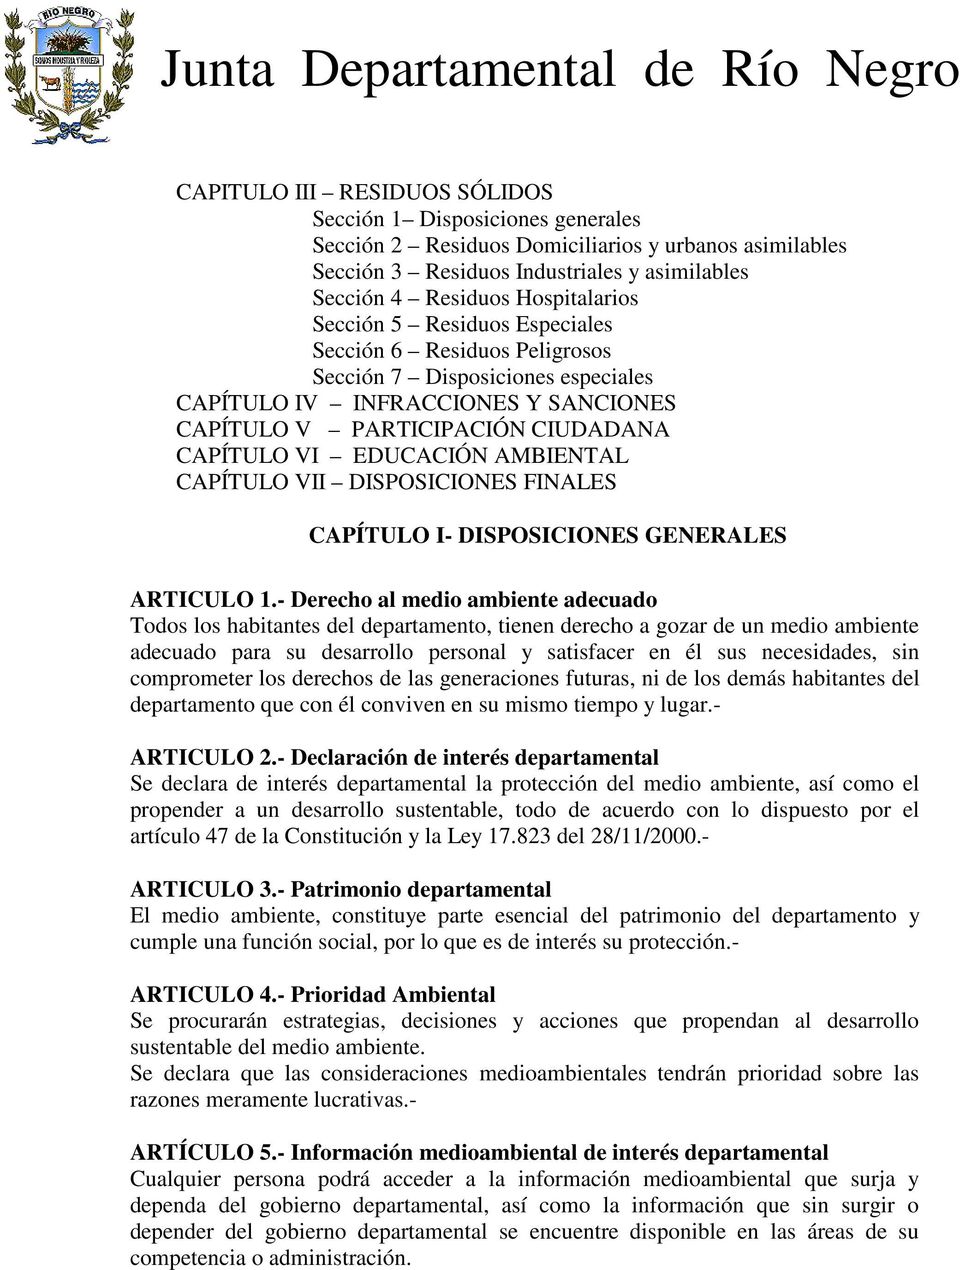 CAPÍTULO VII DISPOSICIONES FINALES CAPÍTULO I- DISPOSICIONES GENERALES ARTICULO 1.